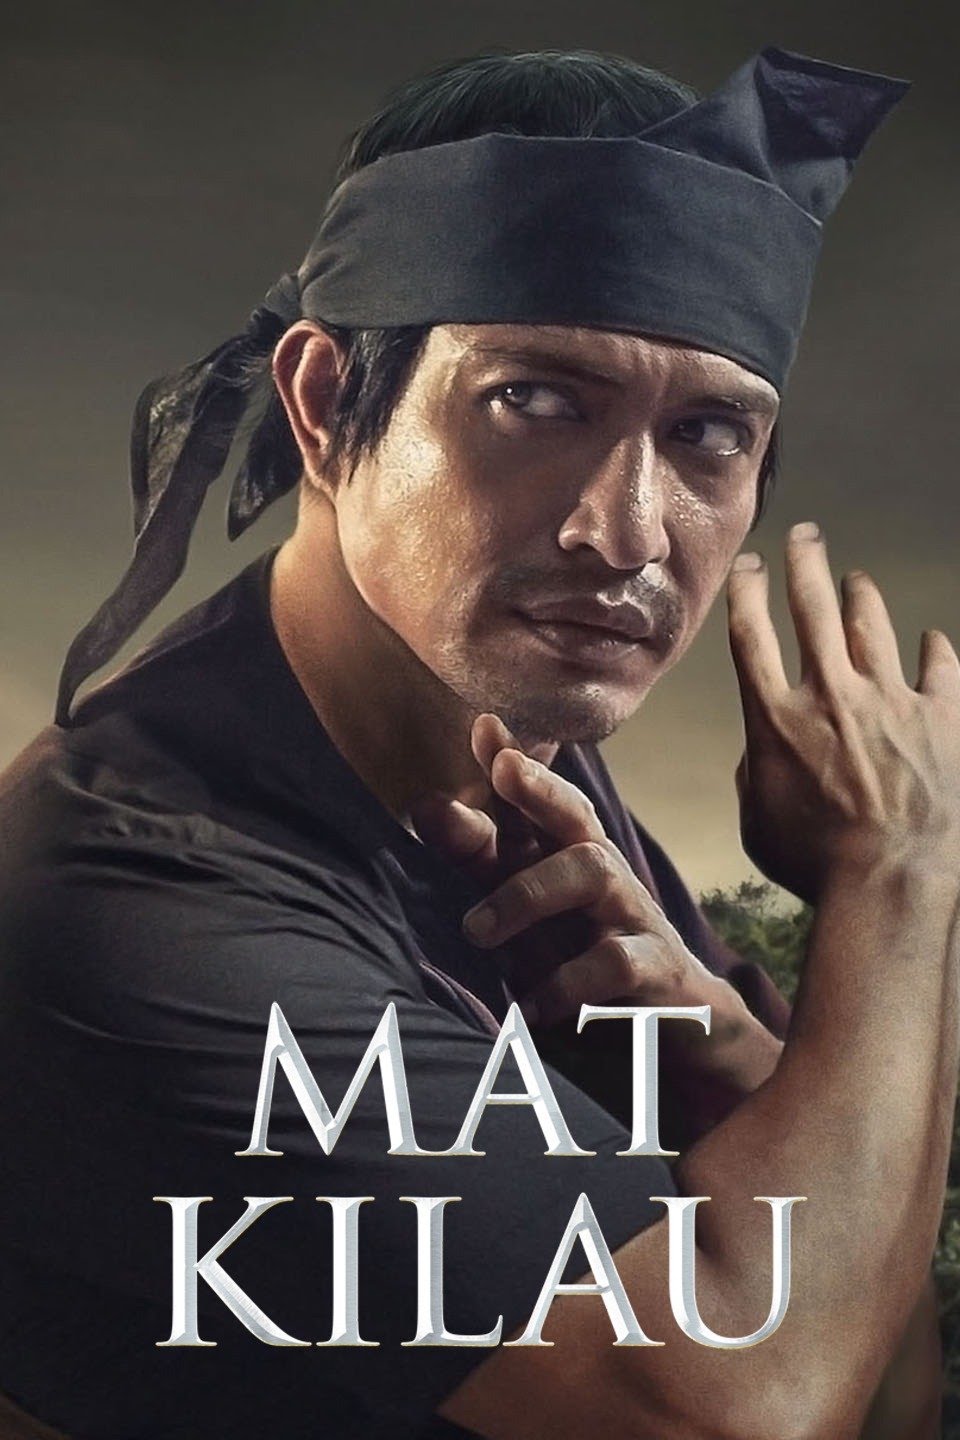 [มาเลย์] Mat Kilau (2022) มัต คีเลา นักสู้เพื่อมาเลย์ [1080p] [พากย์มาเลย์ 5.1] [Soundtrack บรรยายไทย + Multi] [เสียงมาเลย์ + ซับไทย] [USERLOAD]